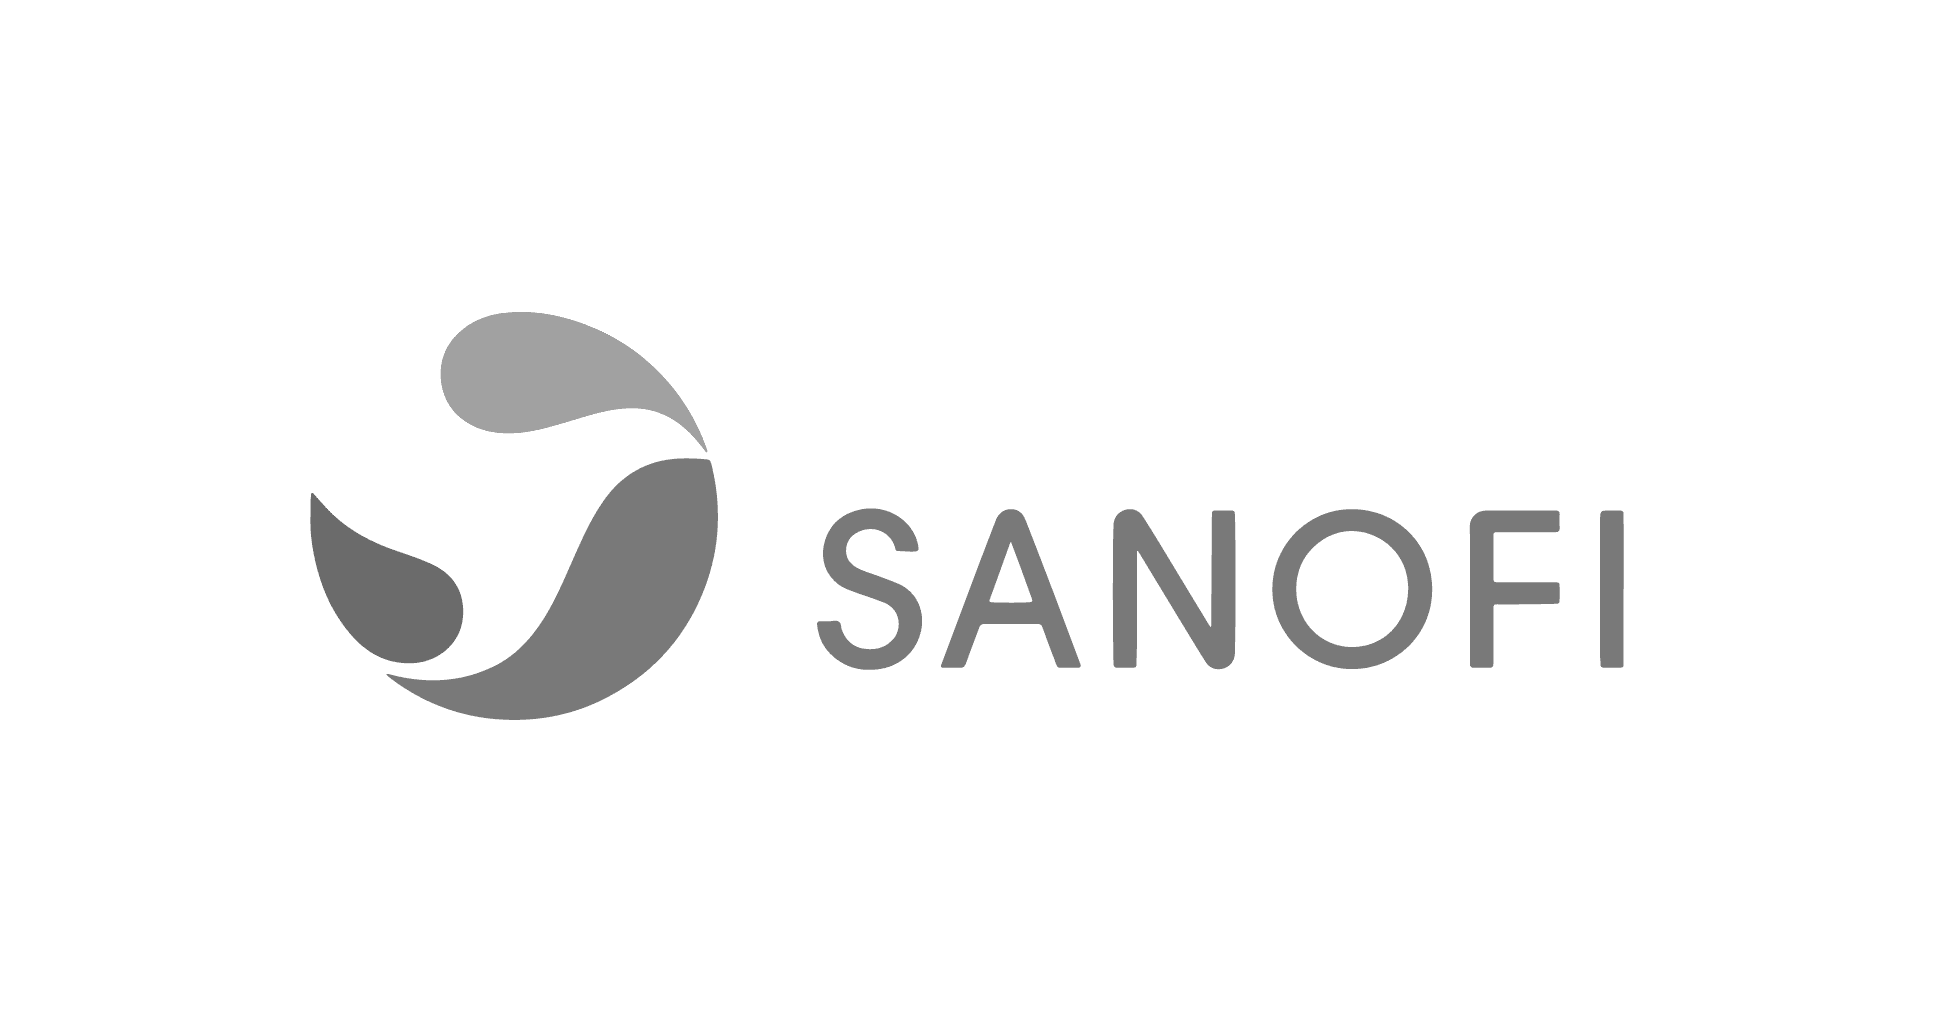 logotipo sanofi